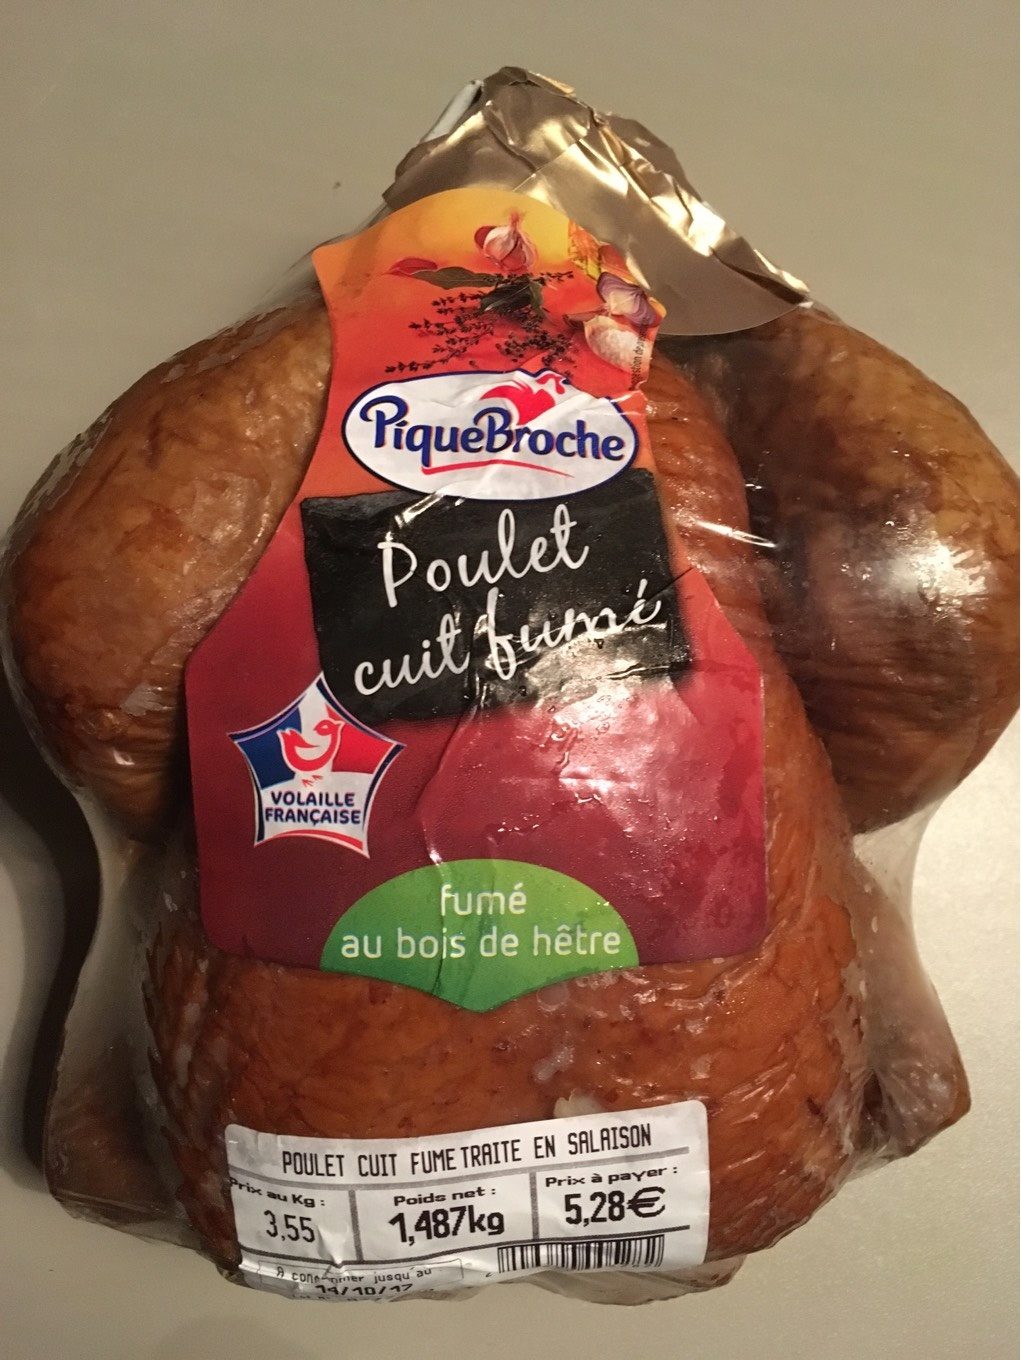 Poulet cuit fermier - Product - fr